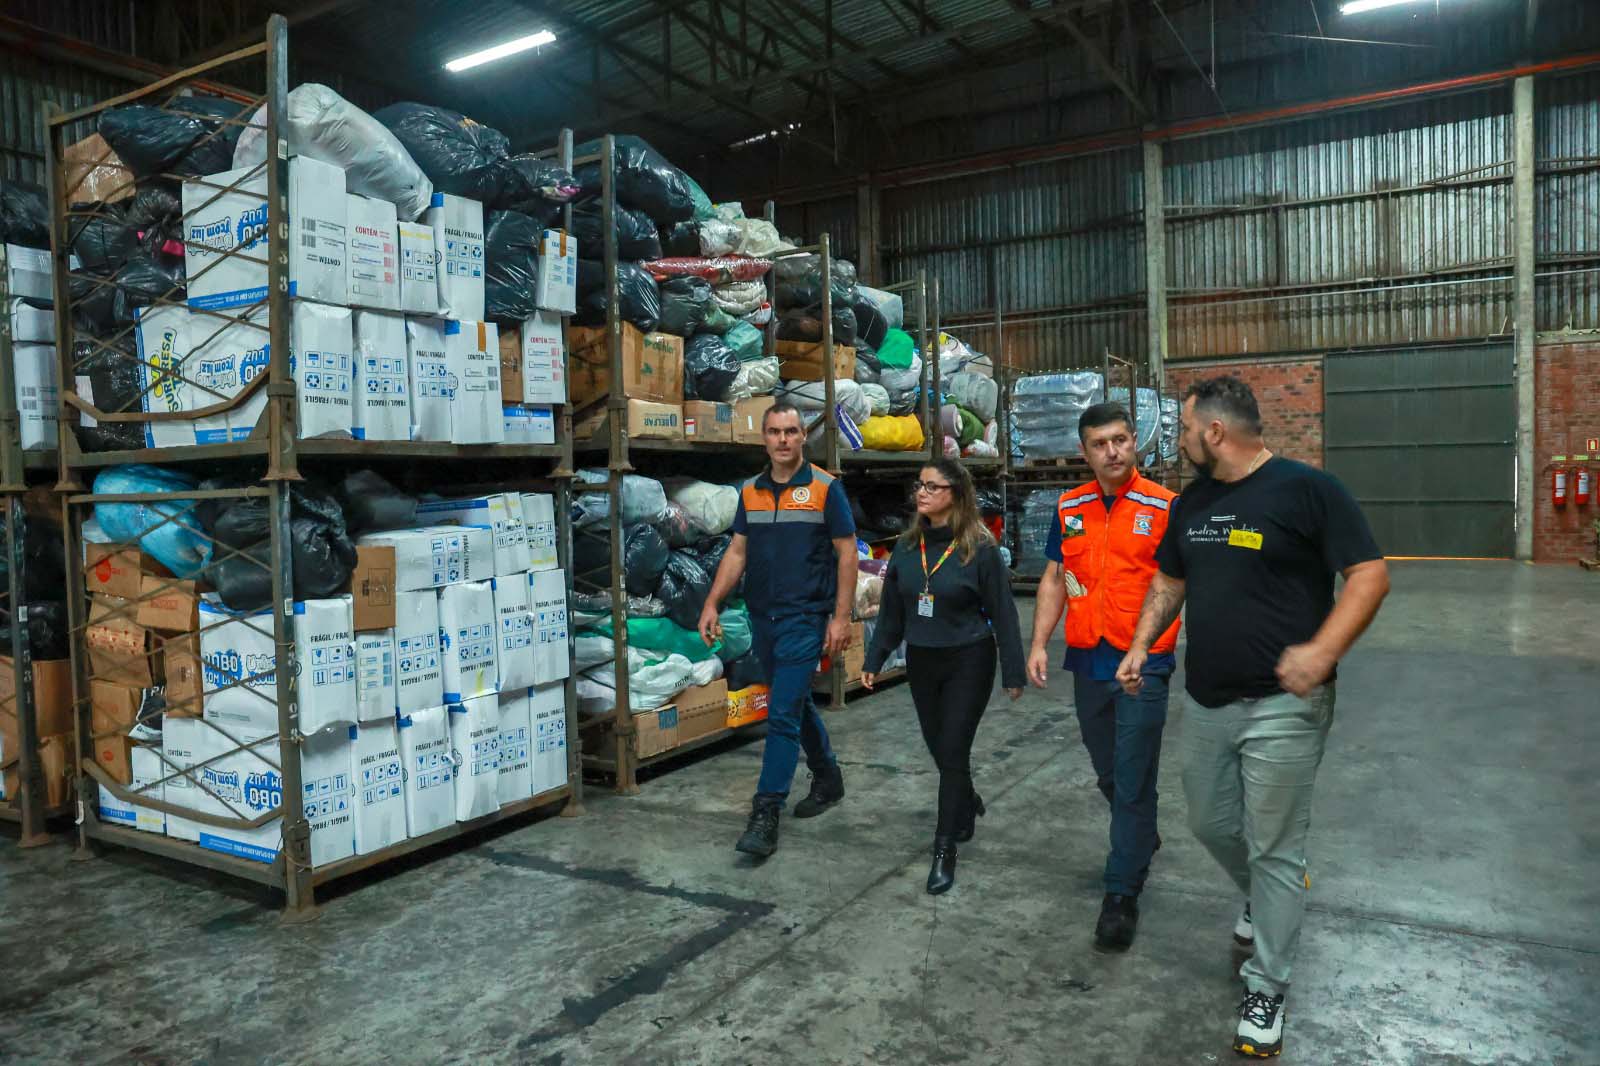 Governo do Paraná quer instituir Rede de Ajuda Humanitária com abrangência nacional